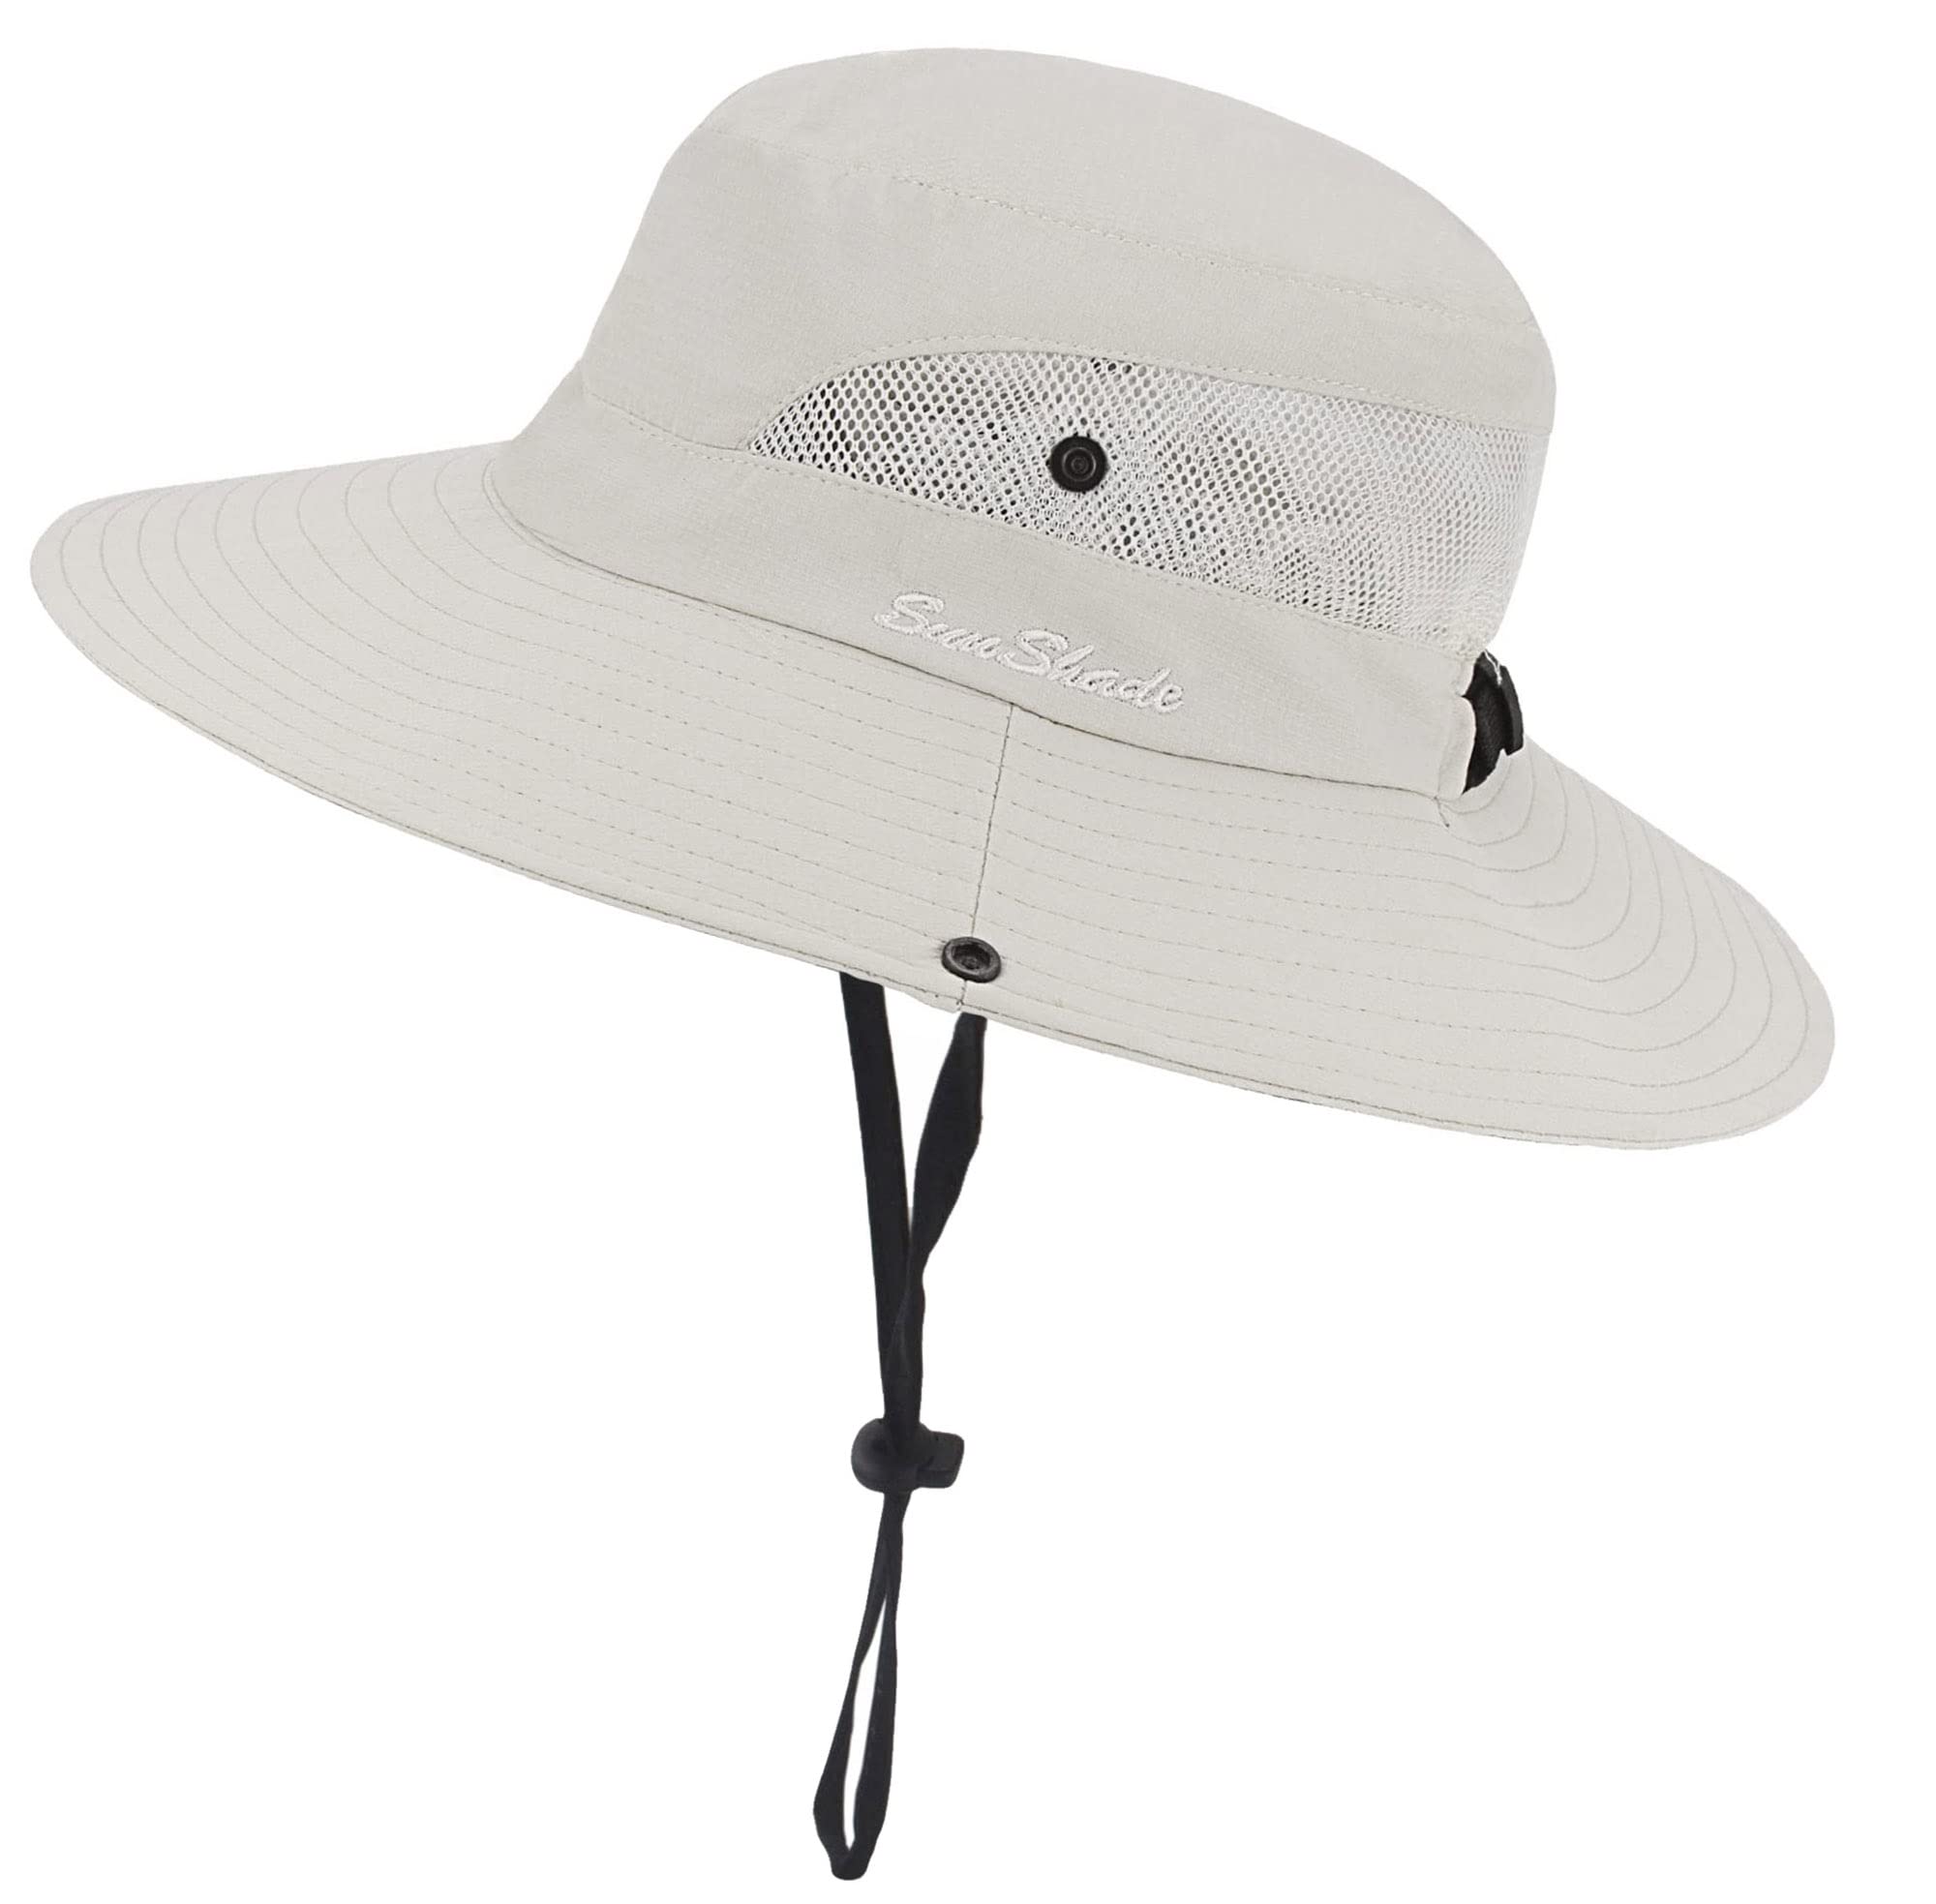 Fishing Hats for Men, Fishing Hats for Women